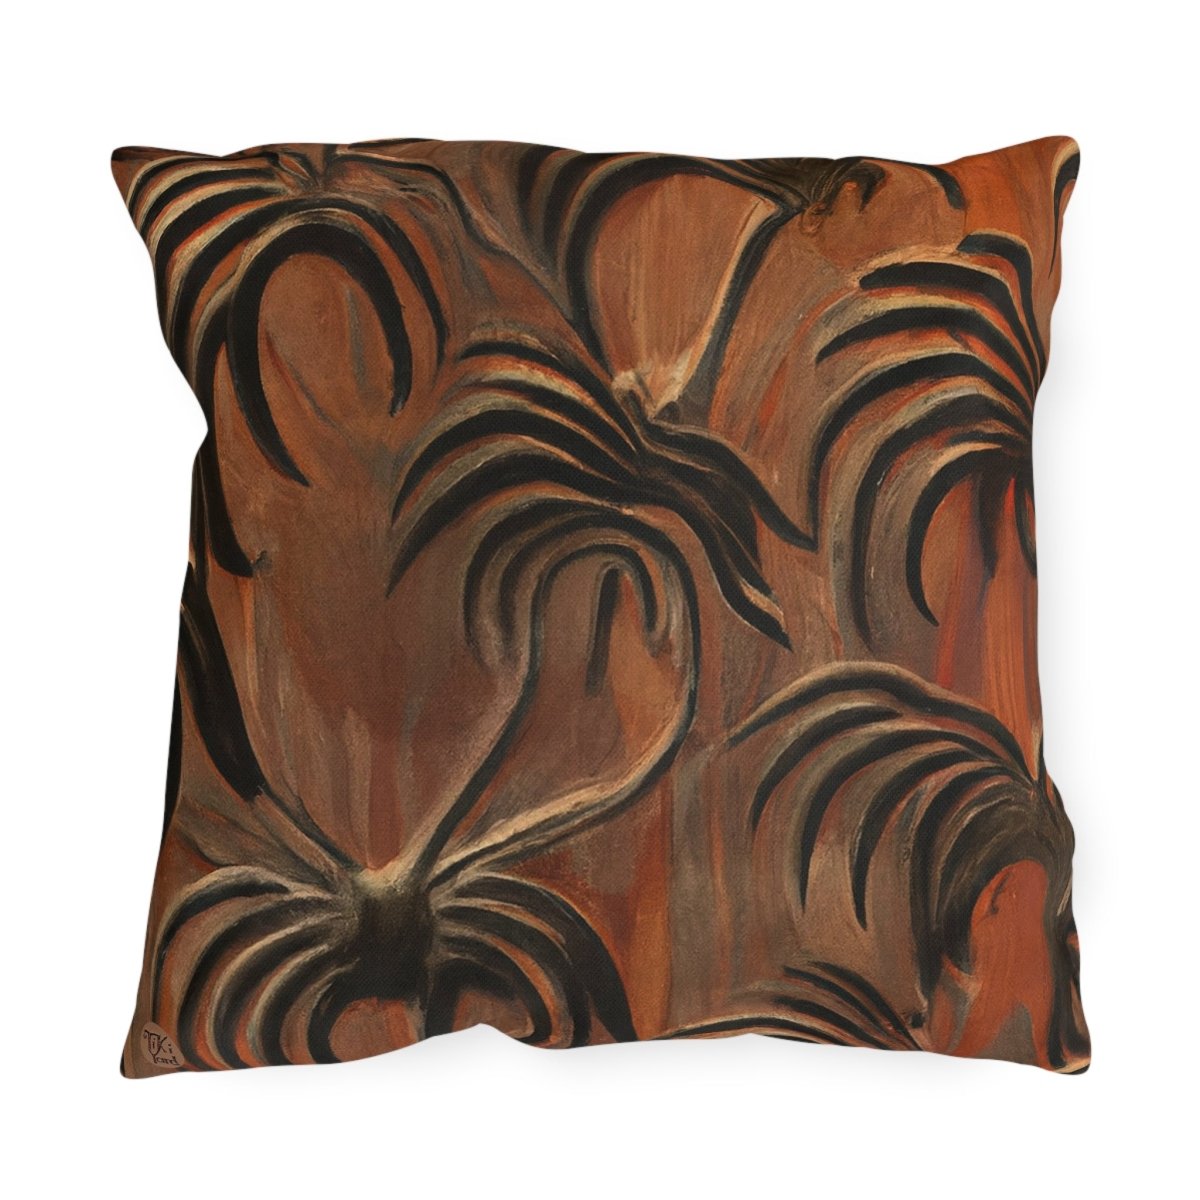 Palm Craft - Outdoor Throw Pillow - The Tiki Yard - Outdoor Throw Pillows